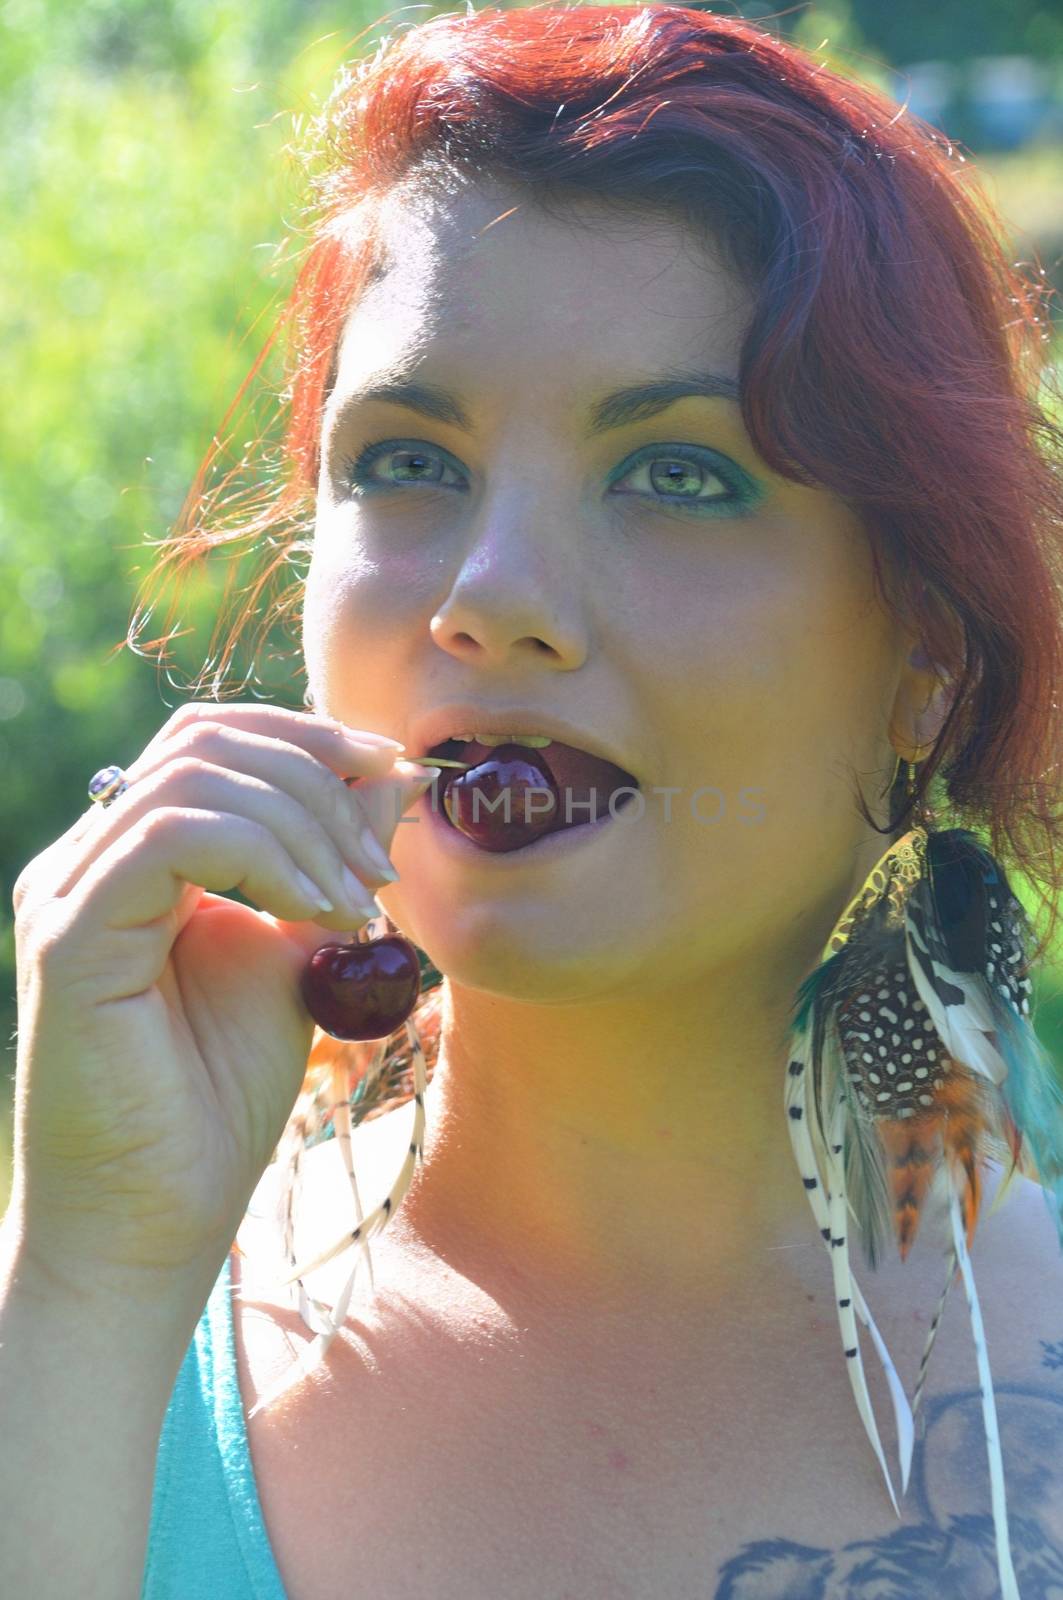 Woman eating cherries